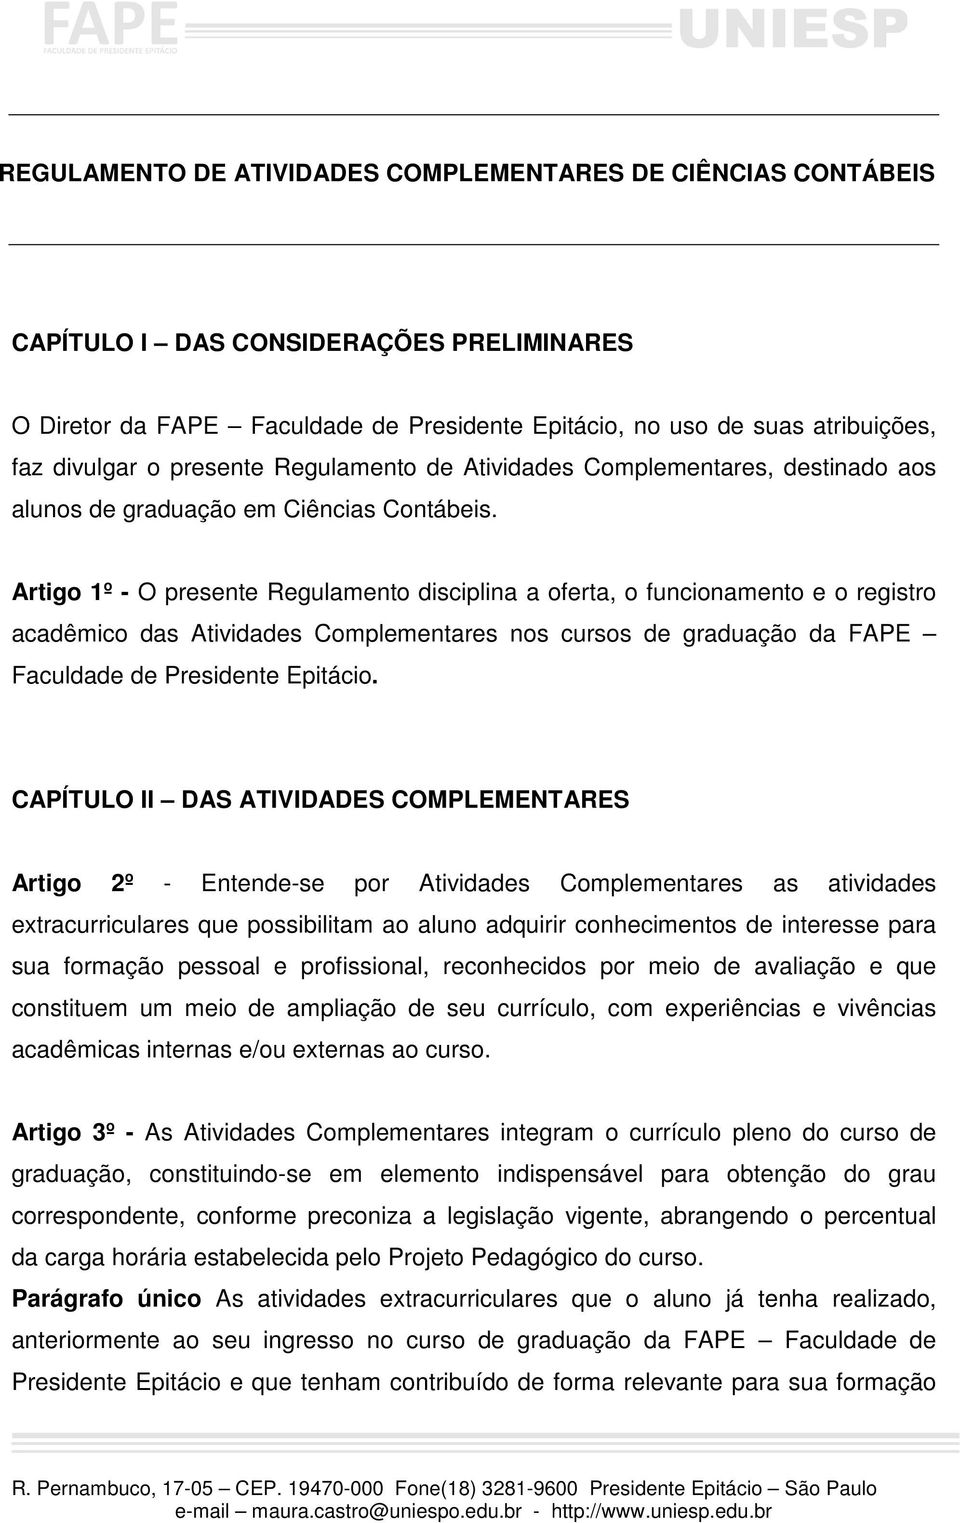 Artigo 1º - O presente Regulamento disciplina a oferta, o funcionamento e o registro acadêmico das Atividades Complementares nos cursos de graduação da FAPE Faculdade de Presidente Epitácio.